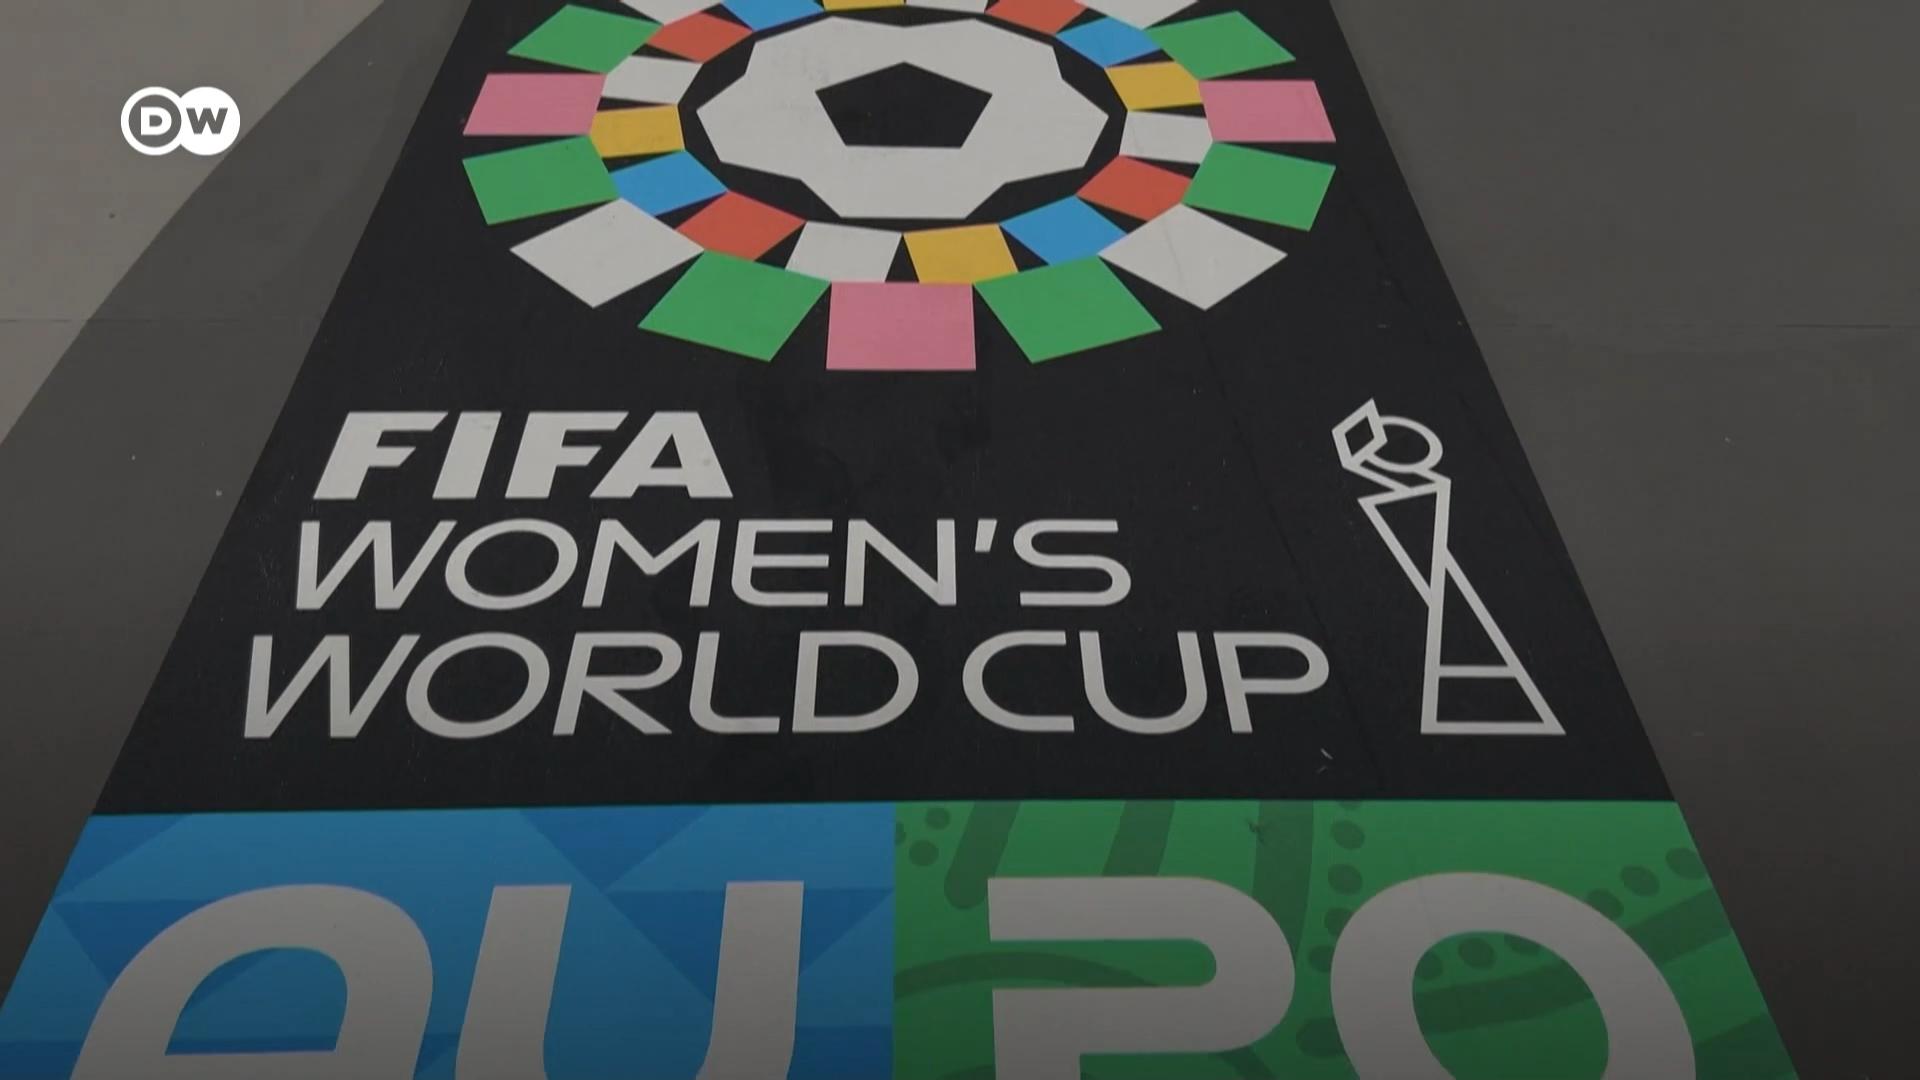 2023年澳大利亚和新西兰合办的女足世界杯即将开赛。德国之声DW的体育记者们将在布里斯班和奥克兰对两个主办国进行更加深入的探访和报道。